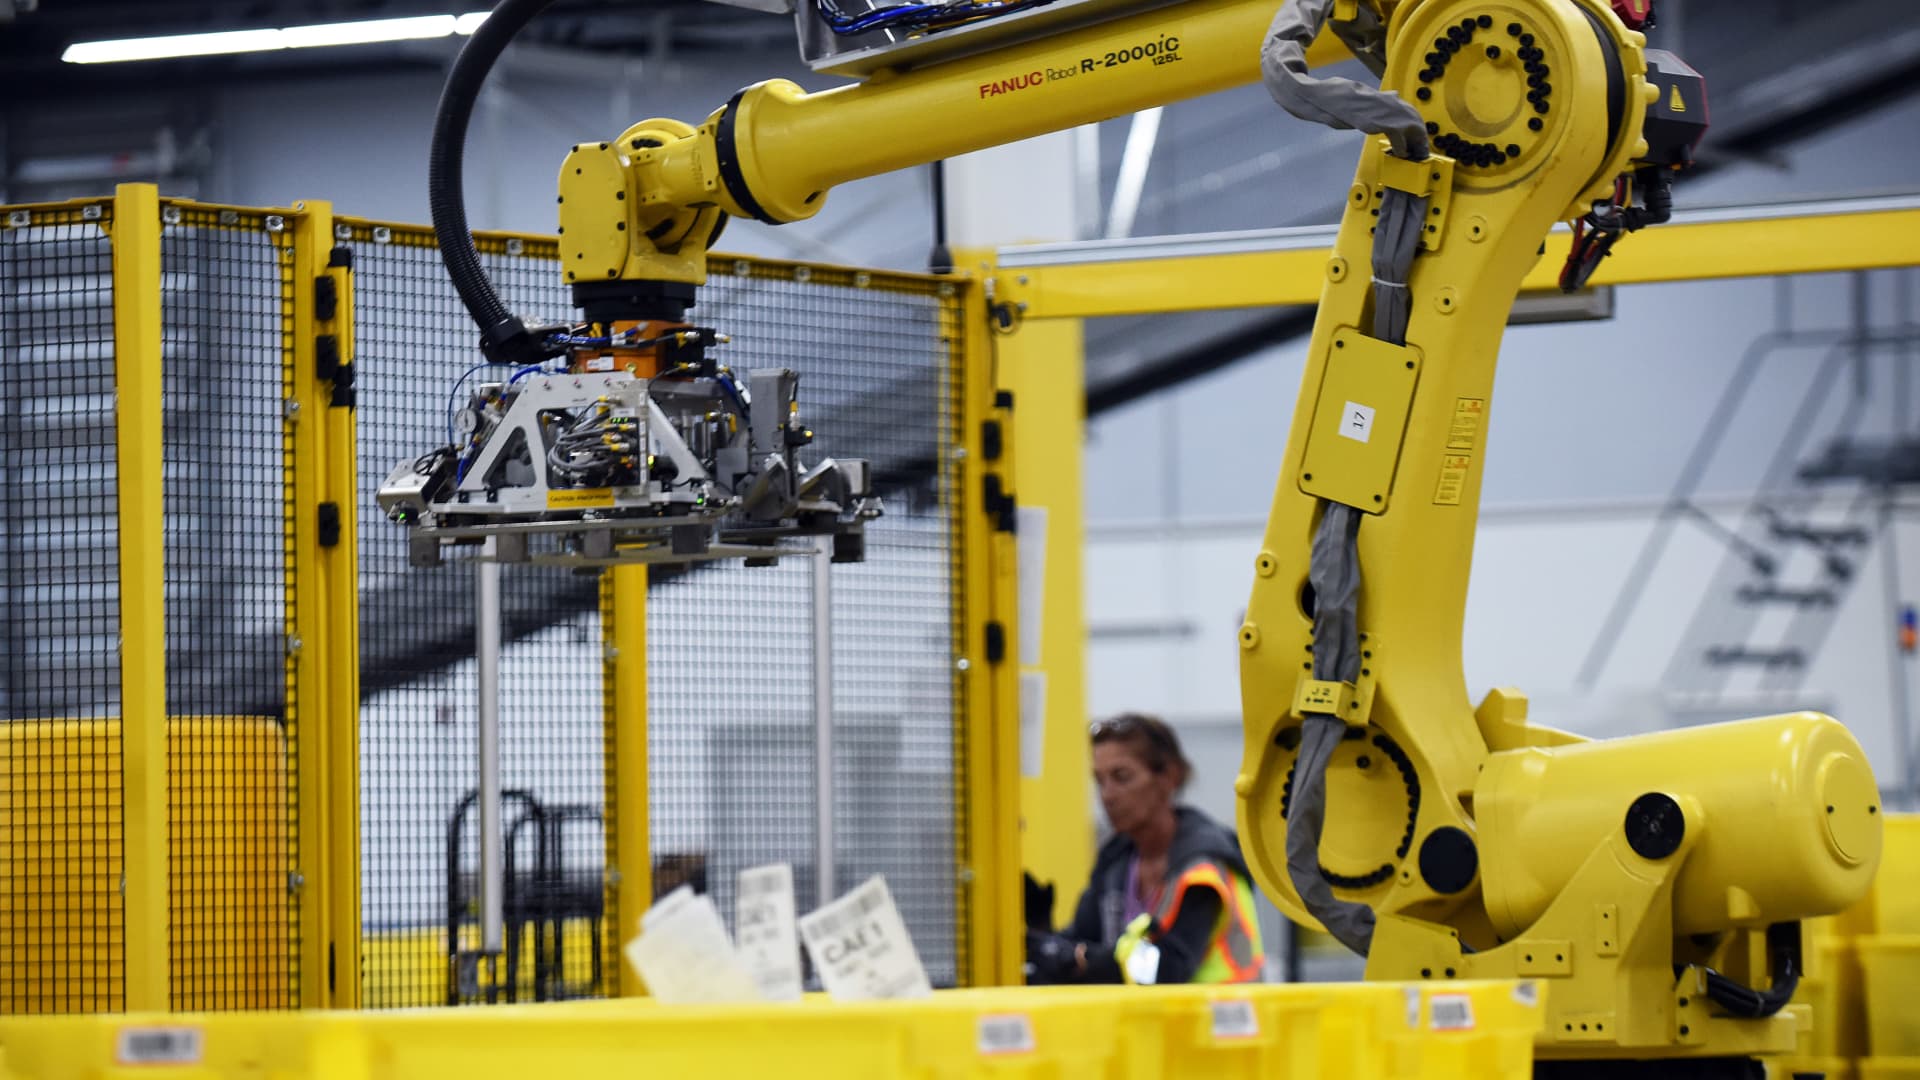 Top Amazon exec says it's a 'myth' robots steal jobs